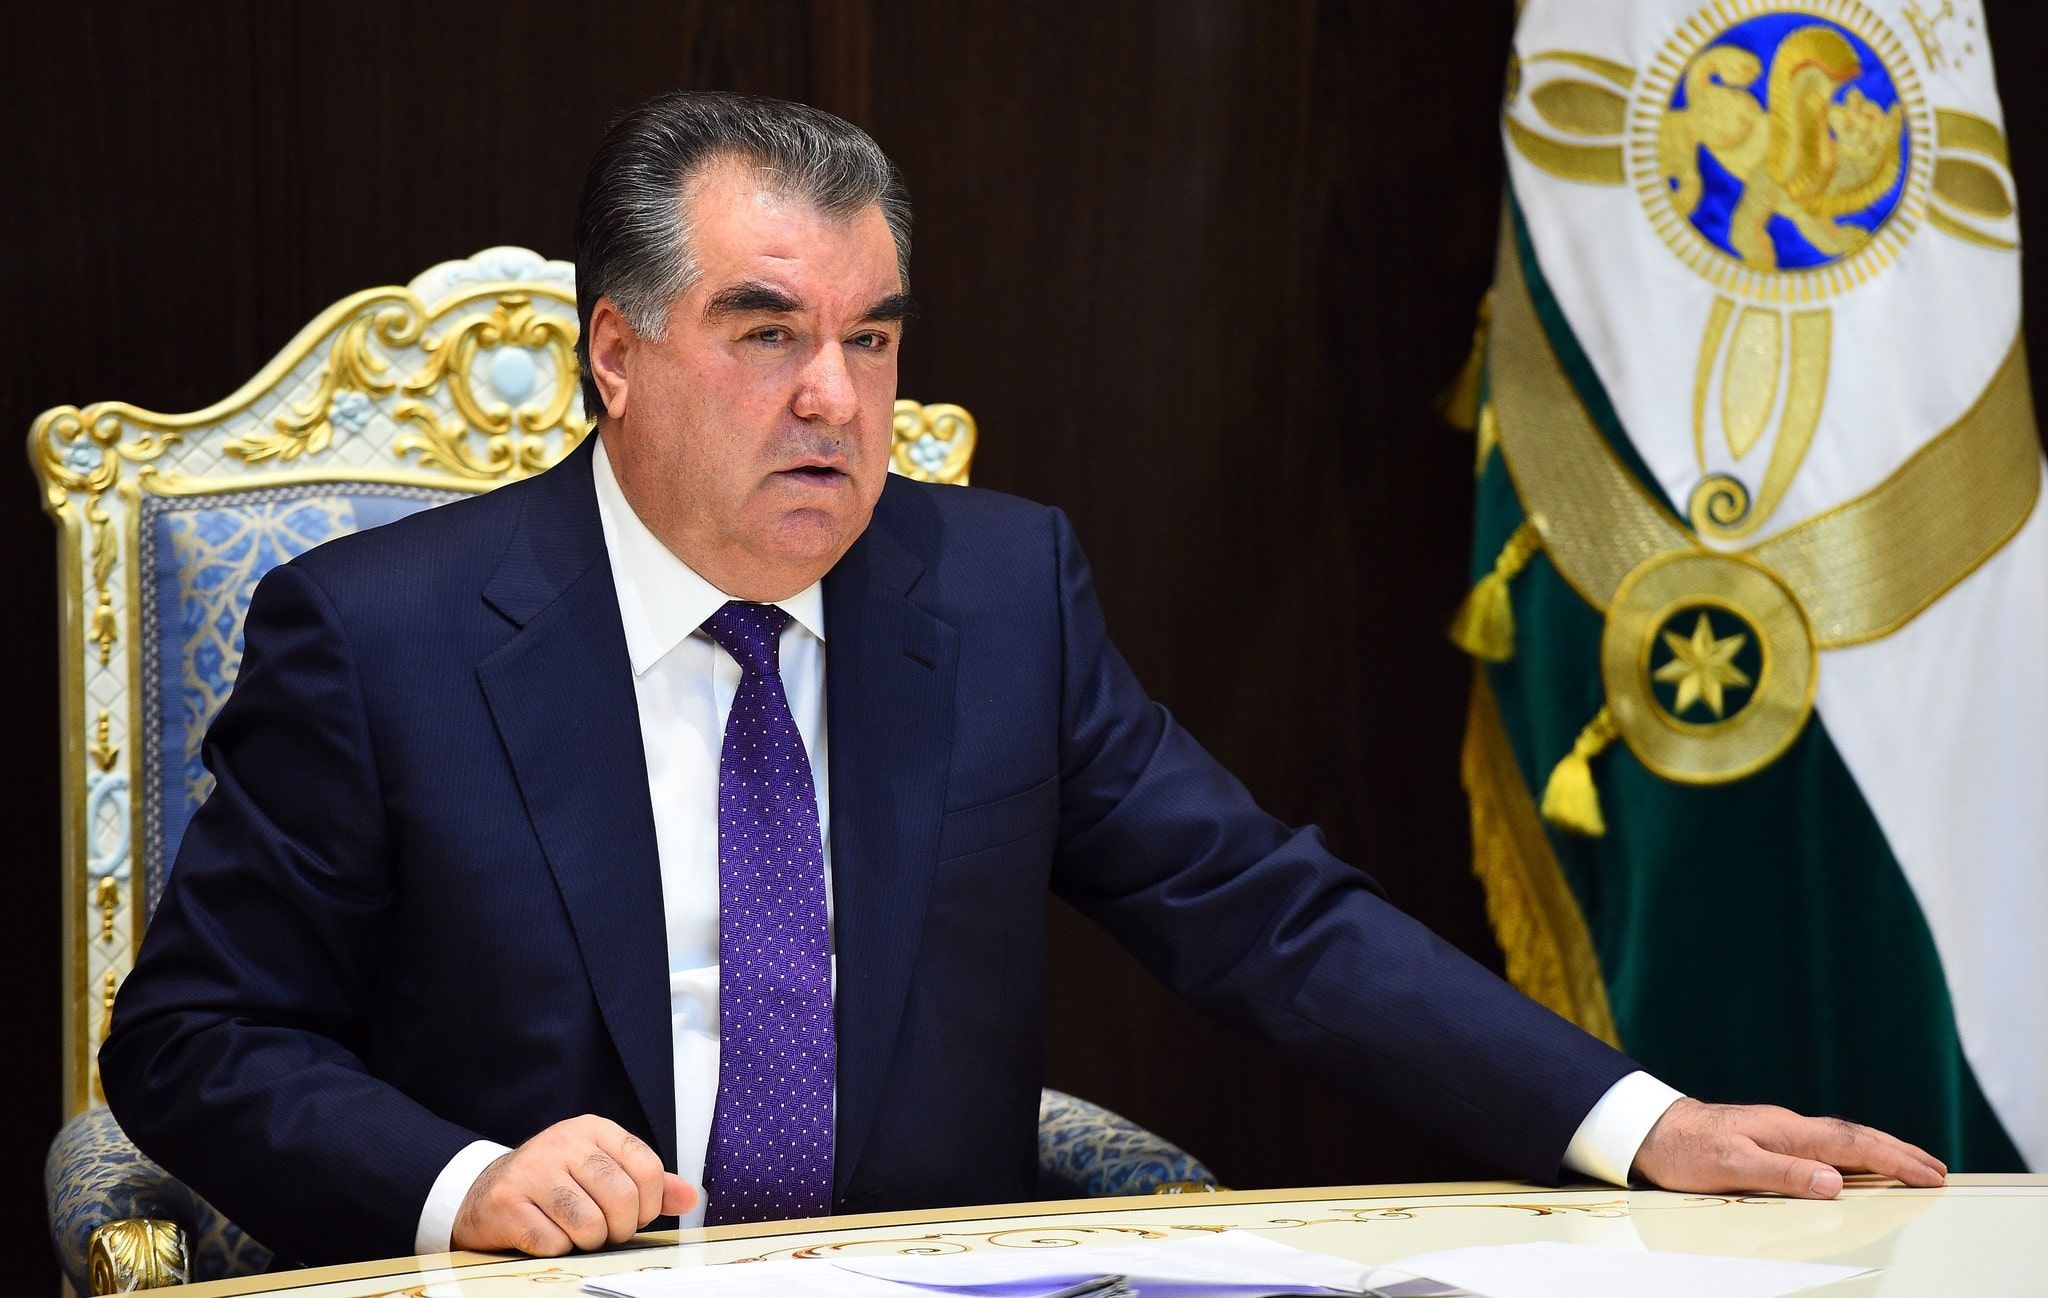 Заявление президента таджикистана. Эмомали Рахмон. Расмхои Эмомали Рахмон. Фото президента Таджикистана Эмомали Рахмон.